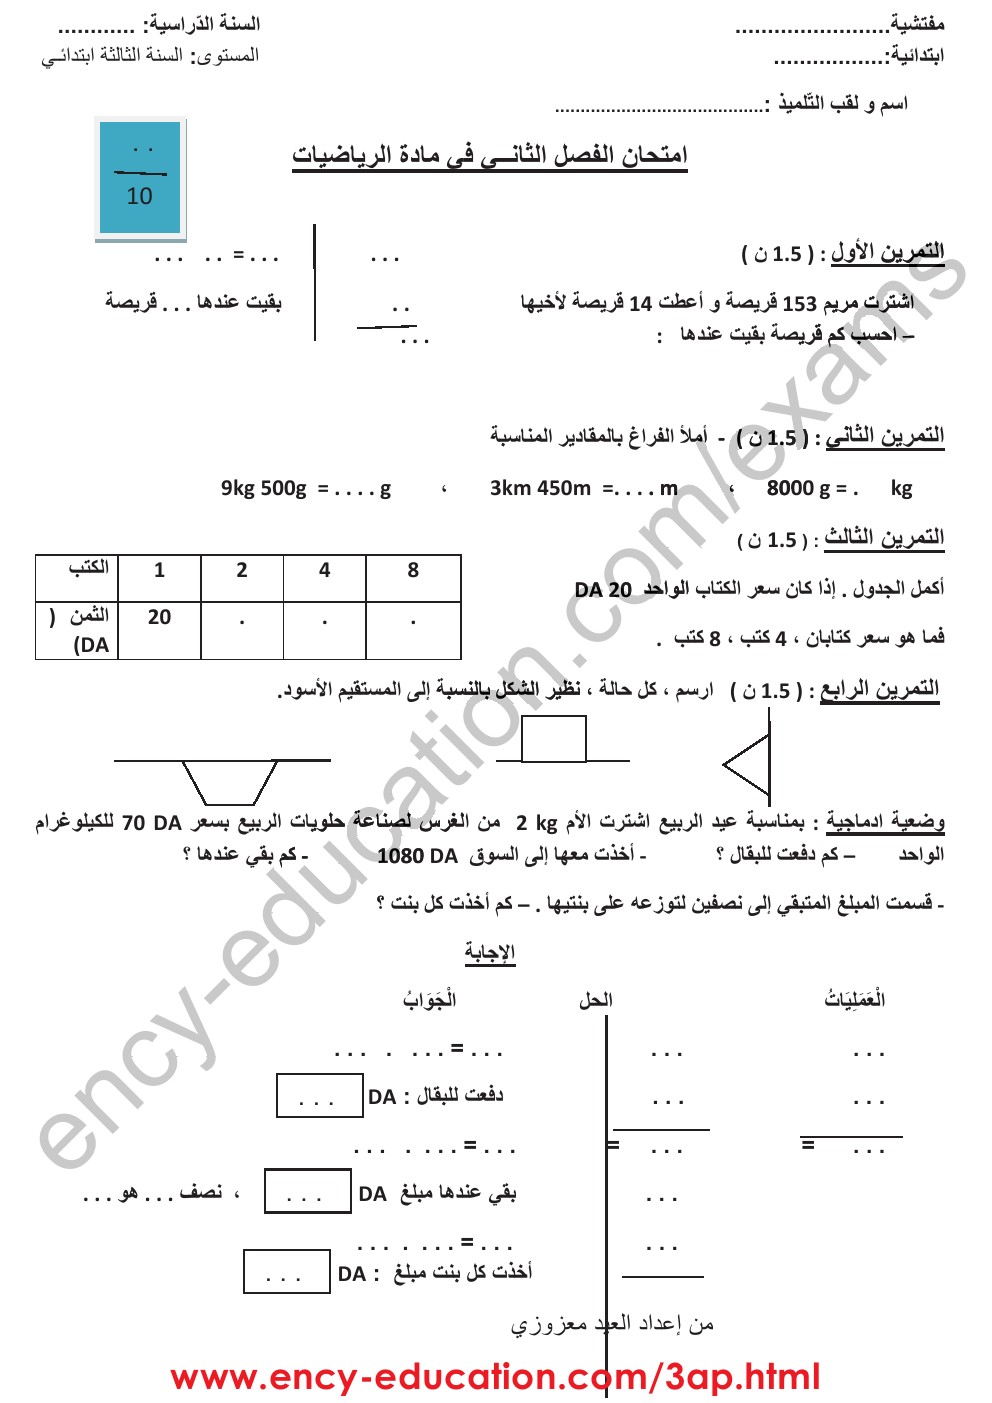 اختبارات الفصل الثاني رياضيات الثالثة ابتدائي ابتدائي 0001186